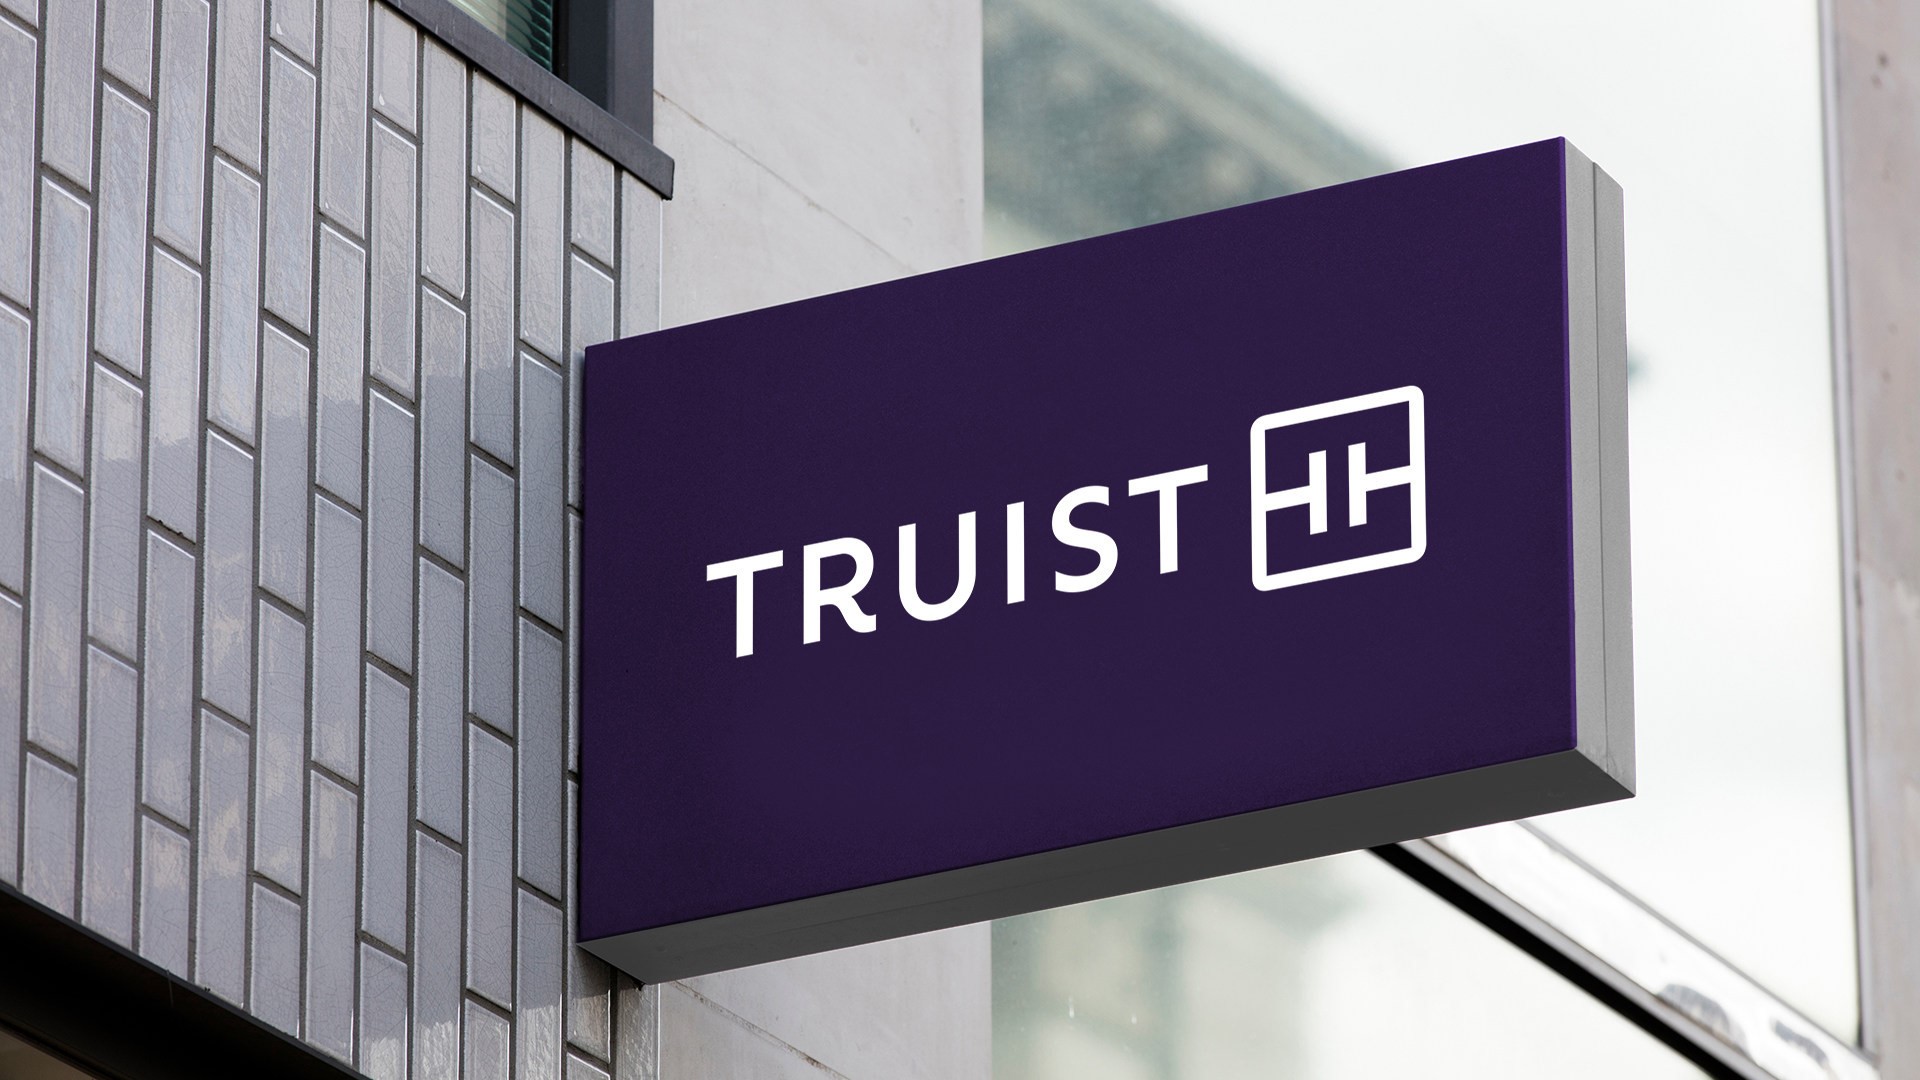 Truist reveals new logo, brand after BB&T SunTrust merger | 11alive.com